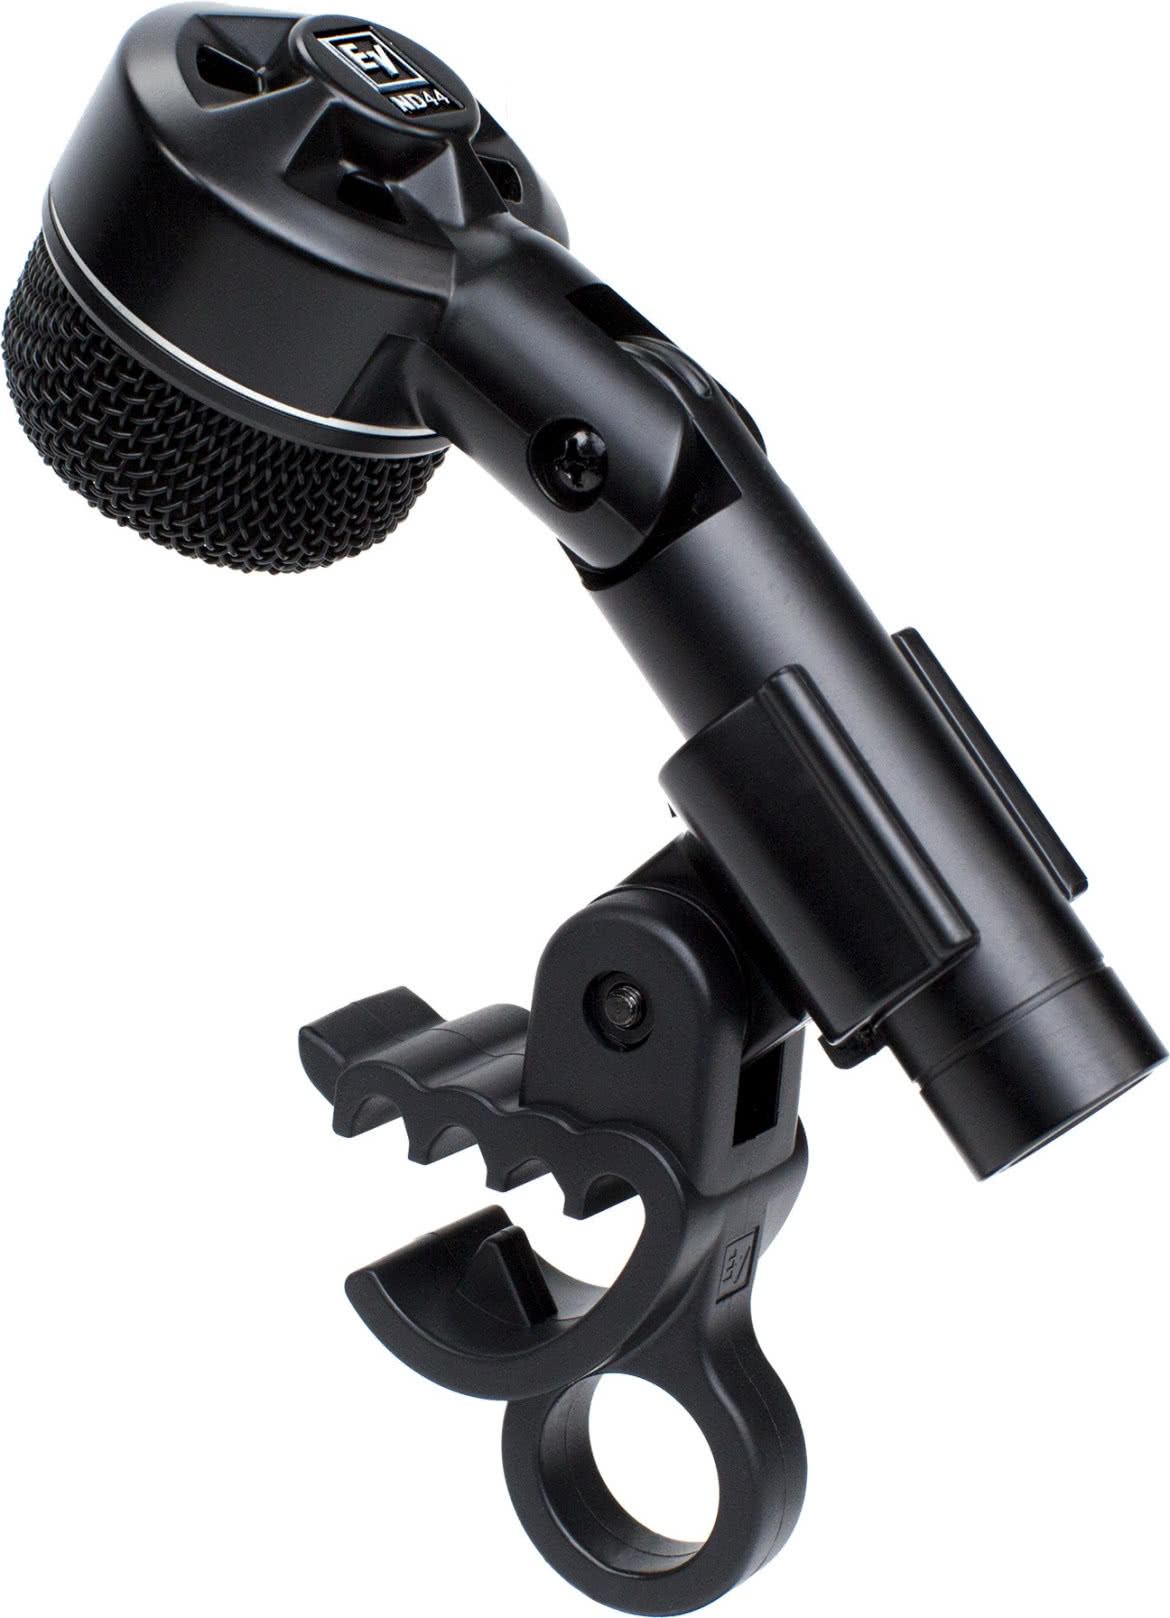 ND Series - mikrofony instrumentalne z serii ND